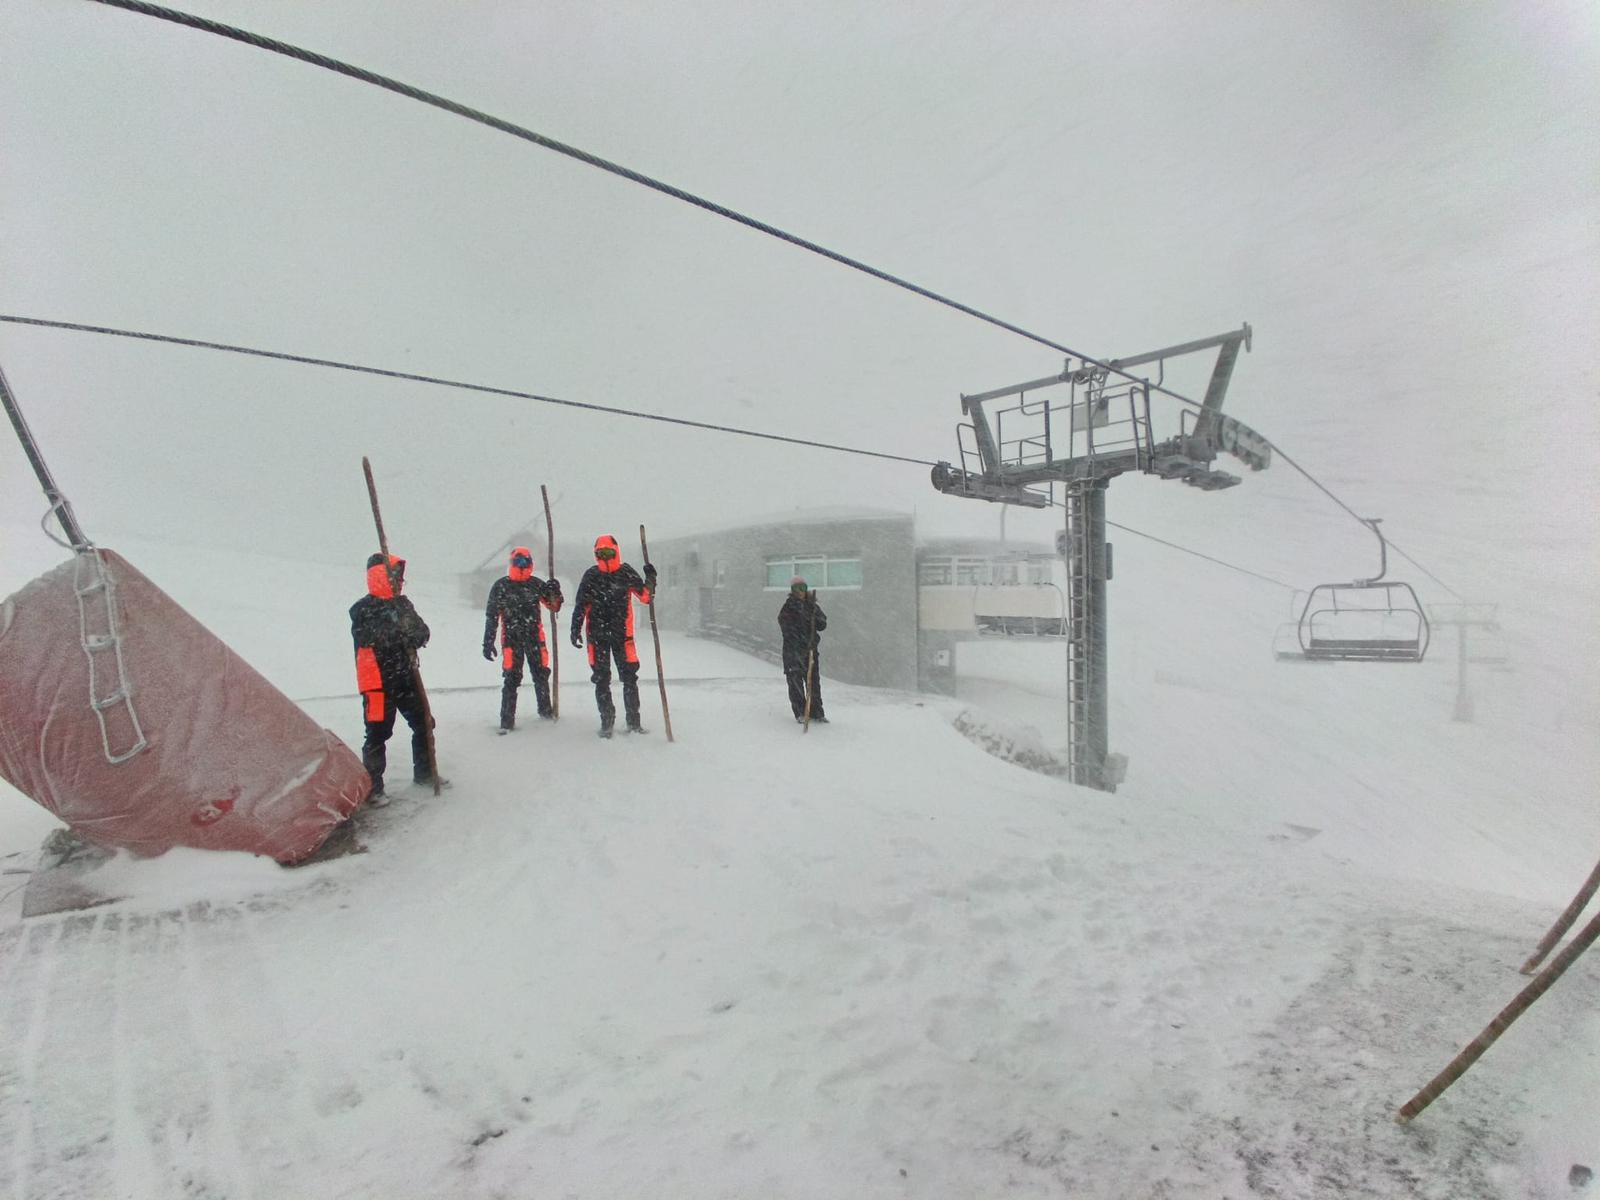 La nevada empieza a dar sus frutos: vuelven a abrir más estaciones de esquí 